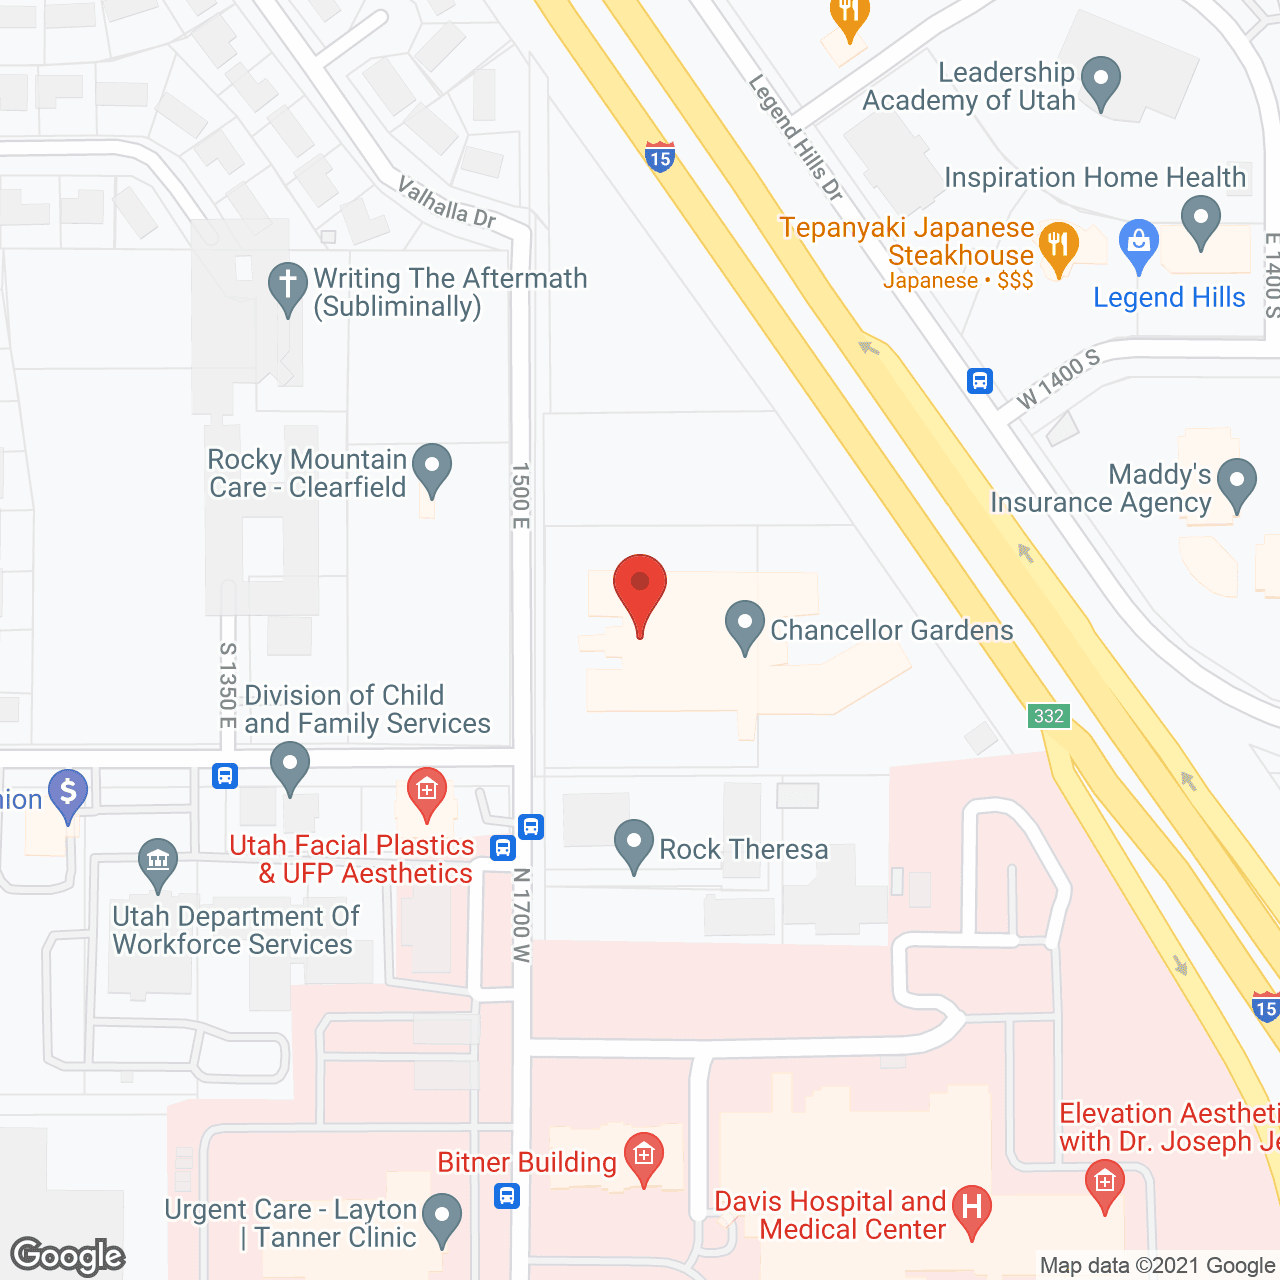 Chancellor Gardens in google map